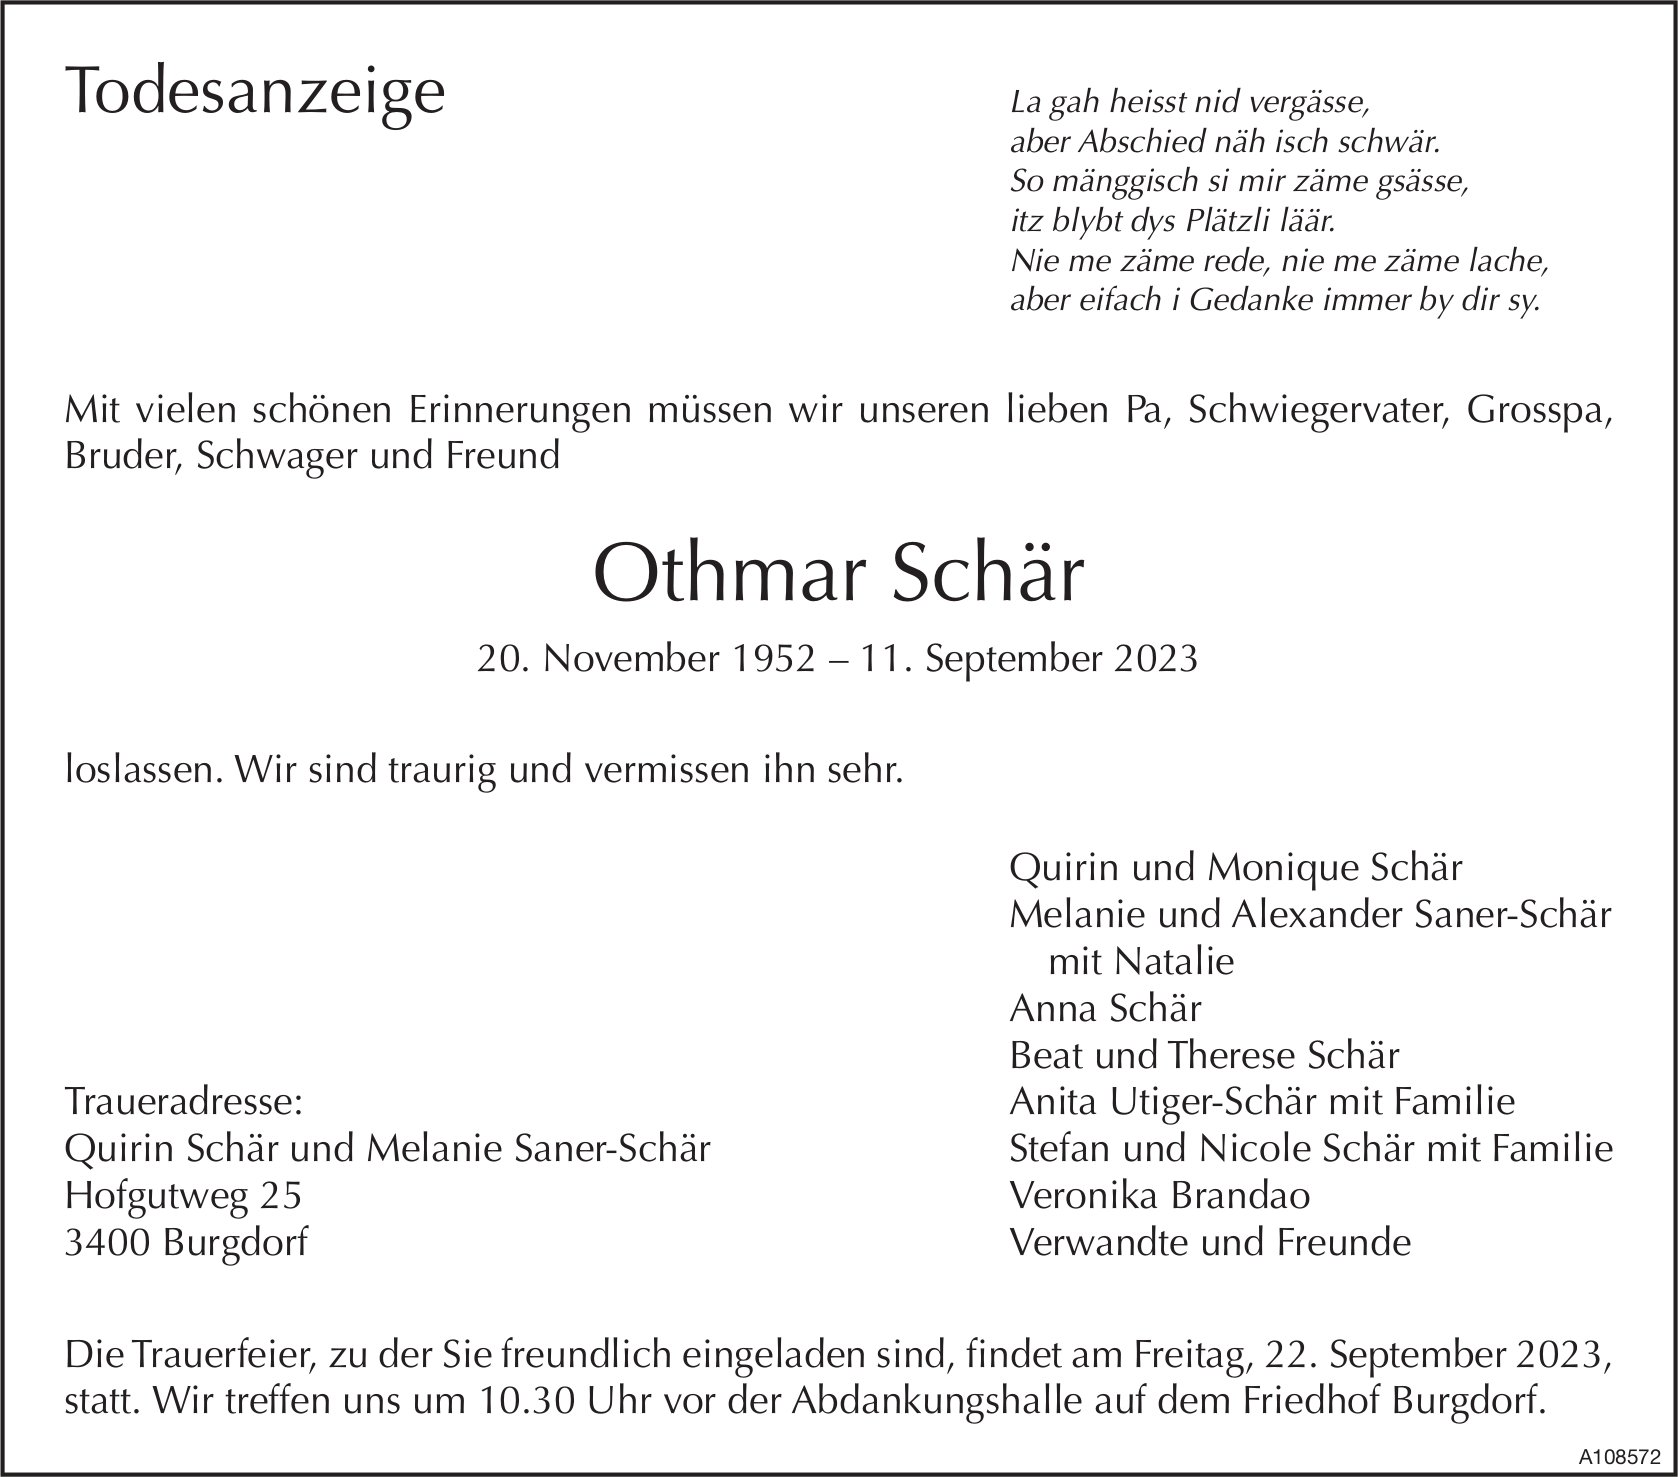 Othmar Schär, September 2023 / TA